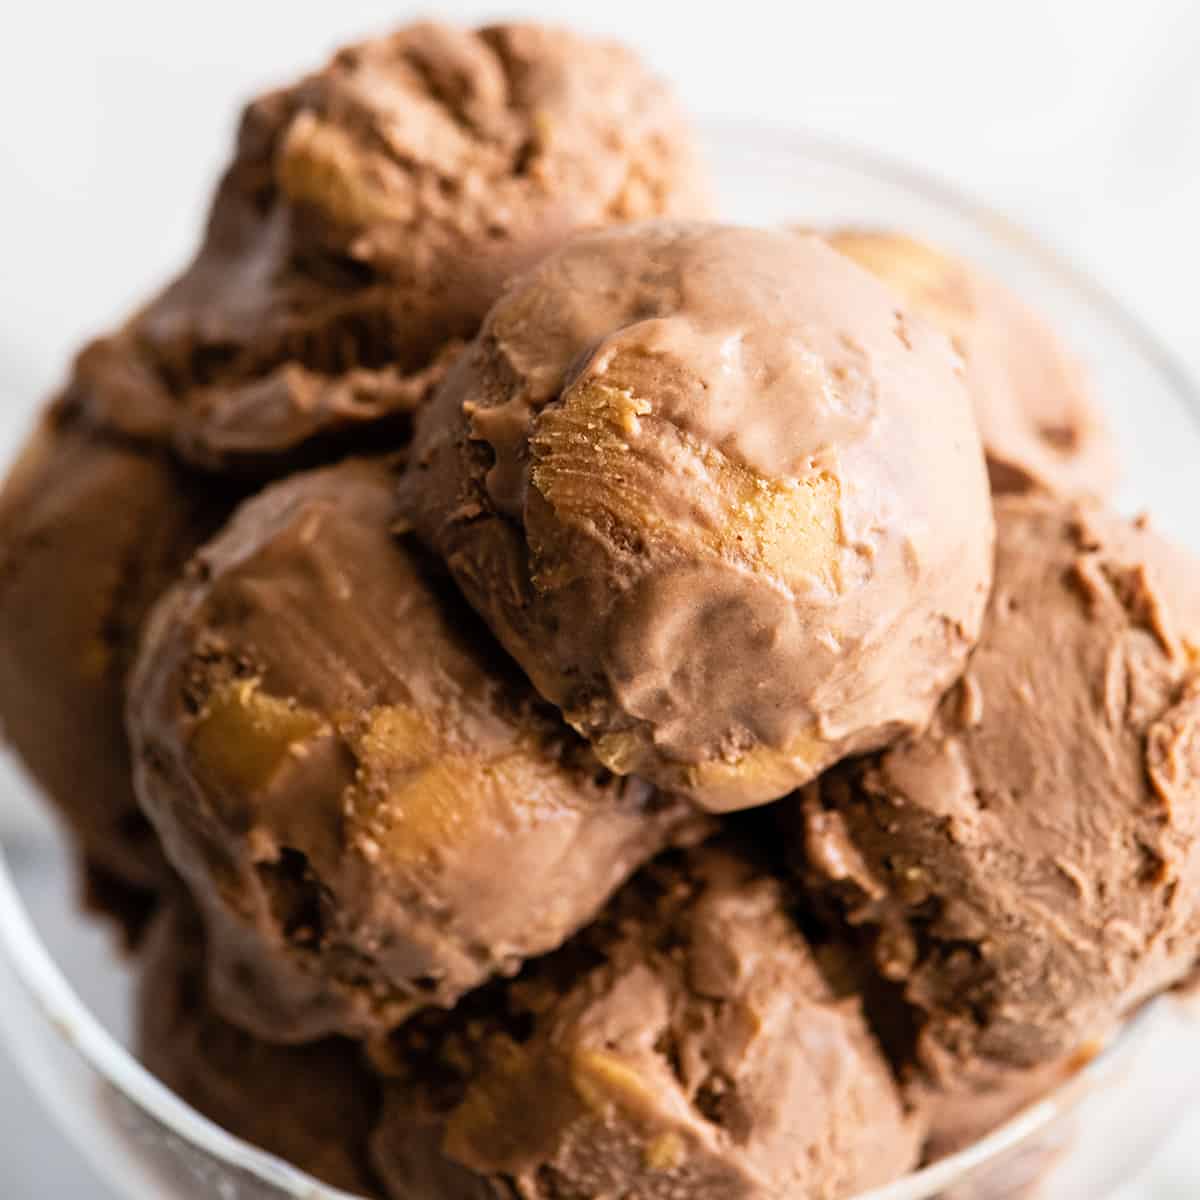 https://joyfoodsunshine.com/wp-content/uploads/2020/08/homemade-chocolate-peanut-butter-ice-cream-recipe-1x1-1.jpg